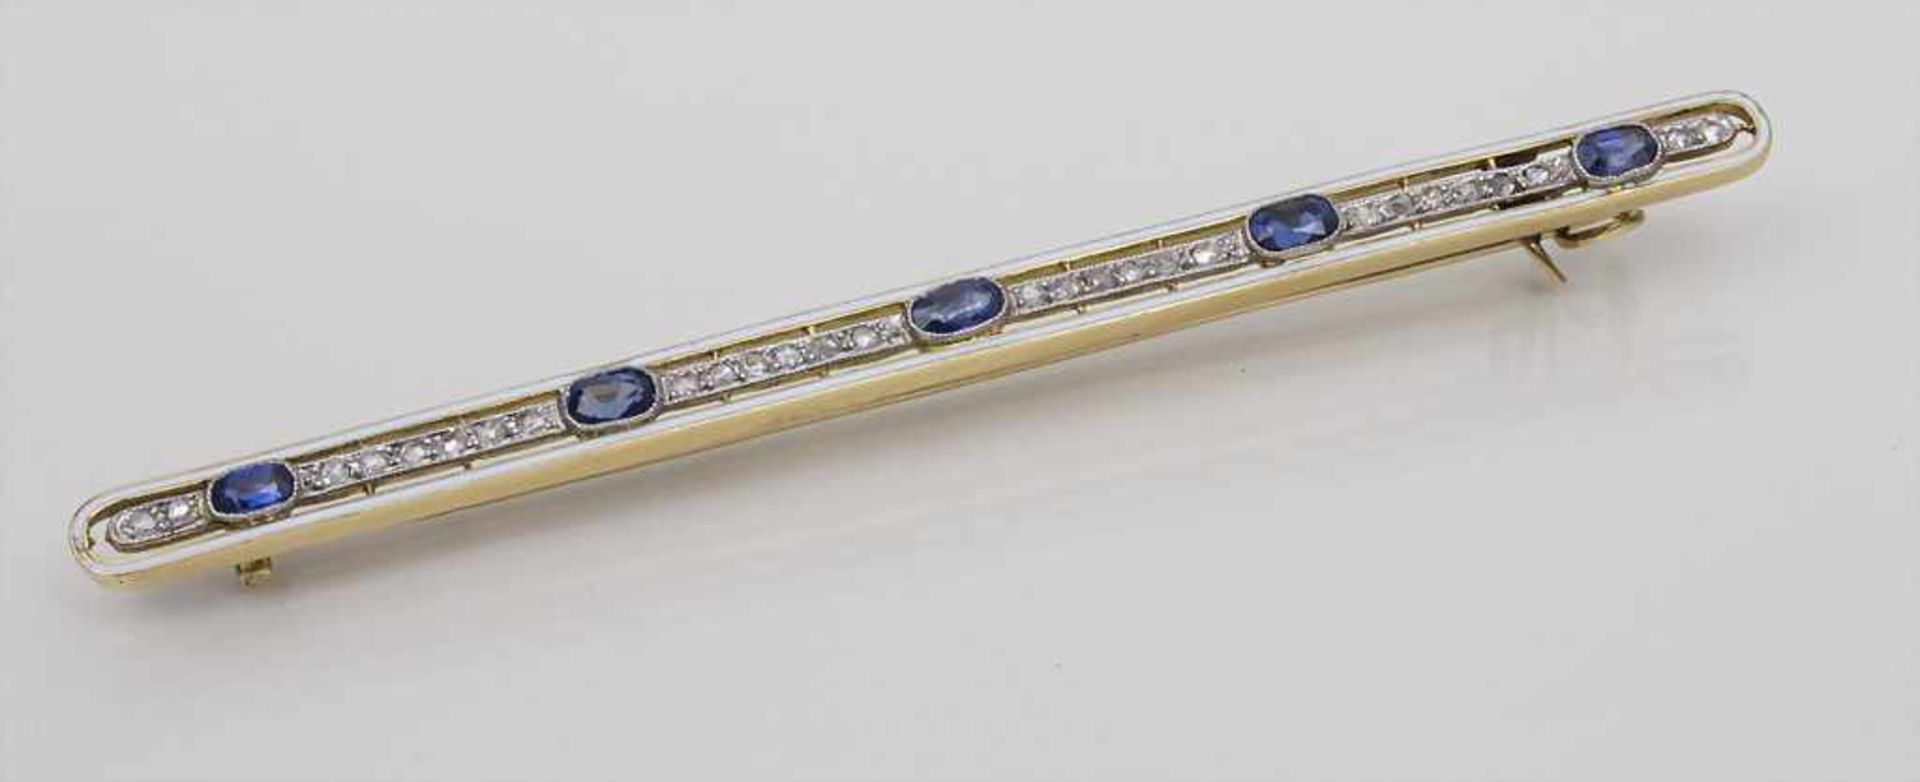 Stabbrosche mit Saphiren und Diamanten / A brooch with sapphires and diamonds, Frankreich, um 1900